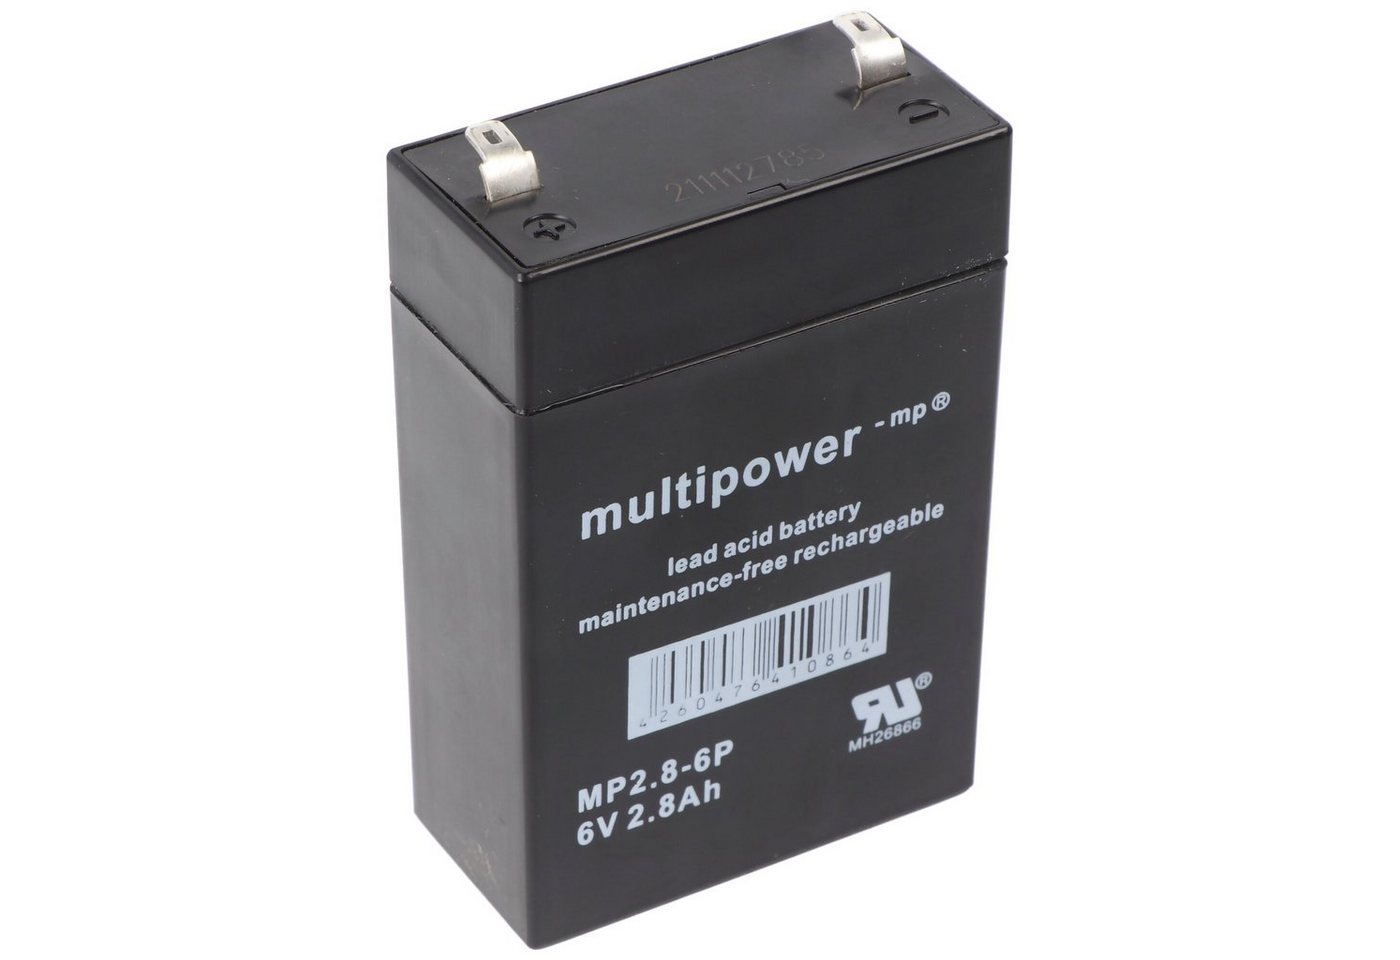 Multipower Multipower MP2.8-6 Akku PB Blei, 6V 2800mAh, Anschluss 4,8mm, MP2.8-6 Akku 2800 mAh (6,0 V) von Multipower